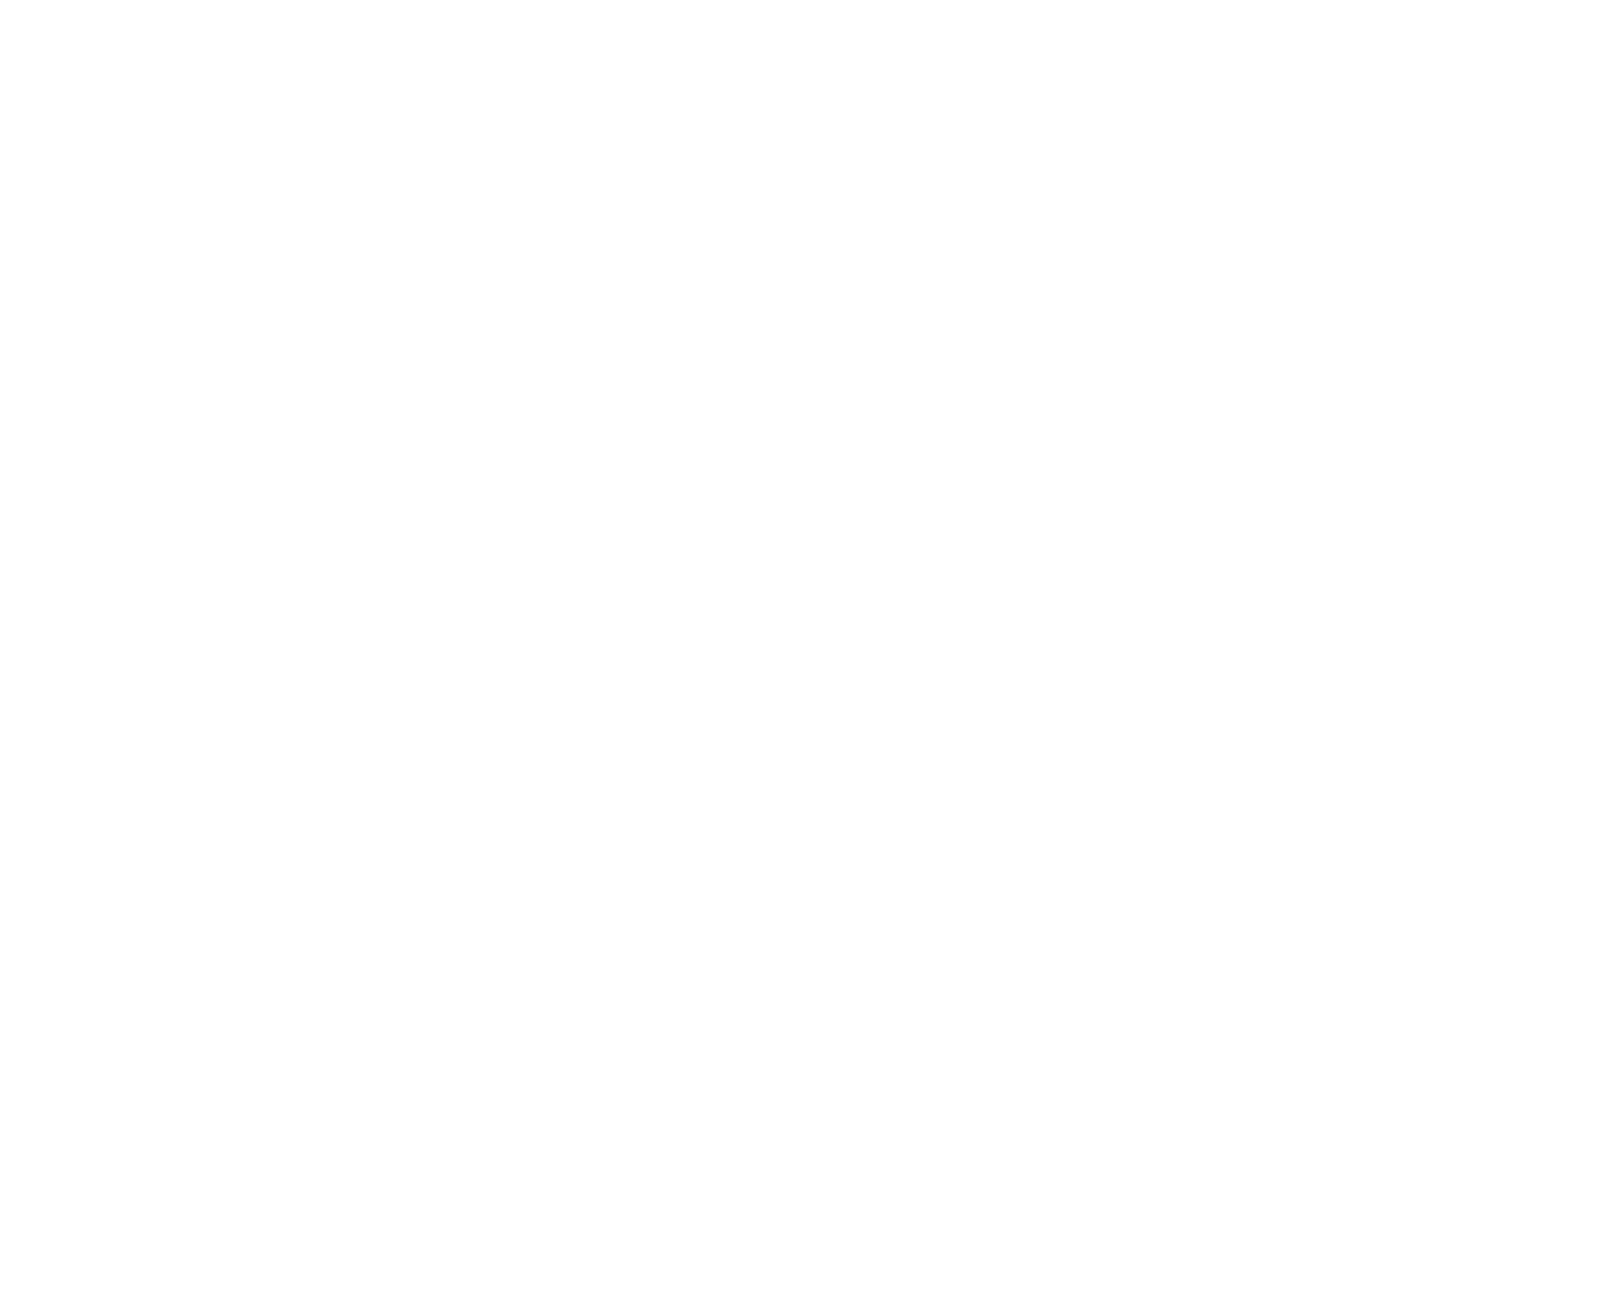 schwaighofer-art-logo-referenz